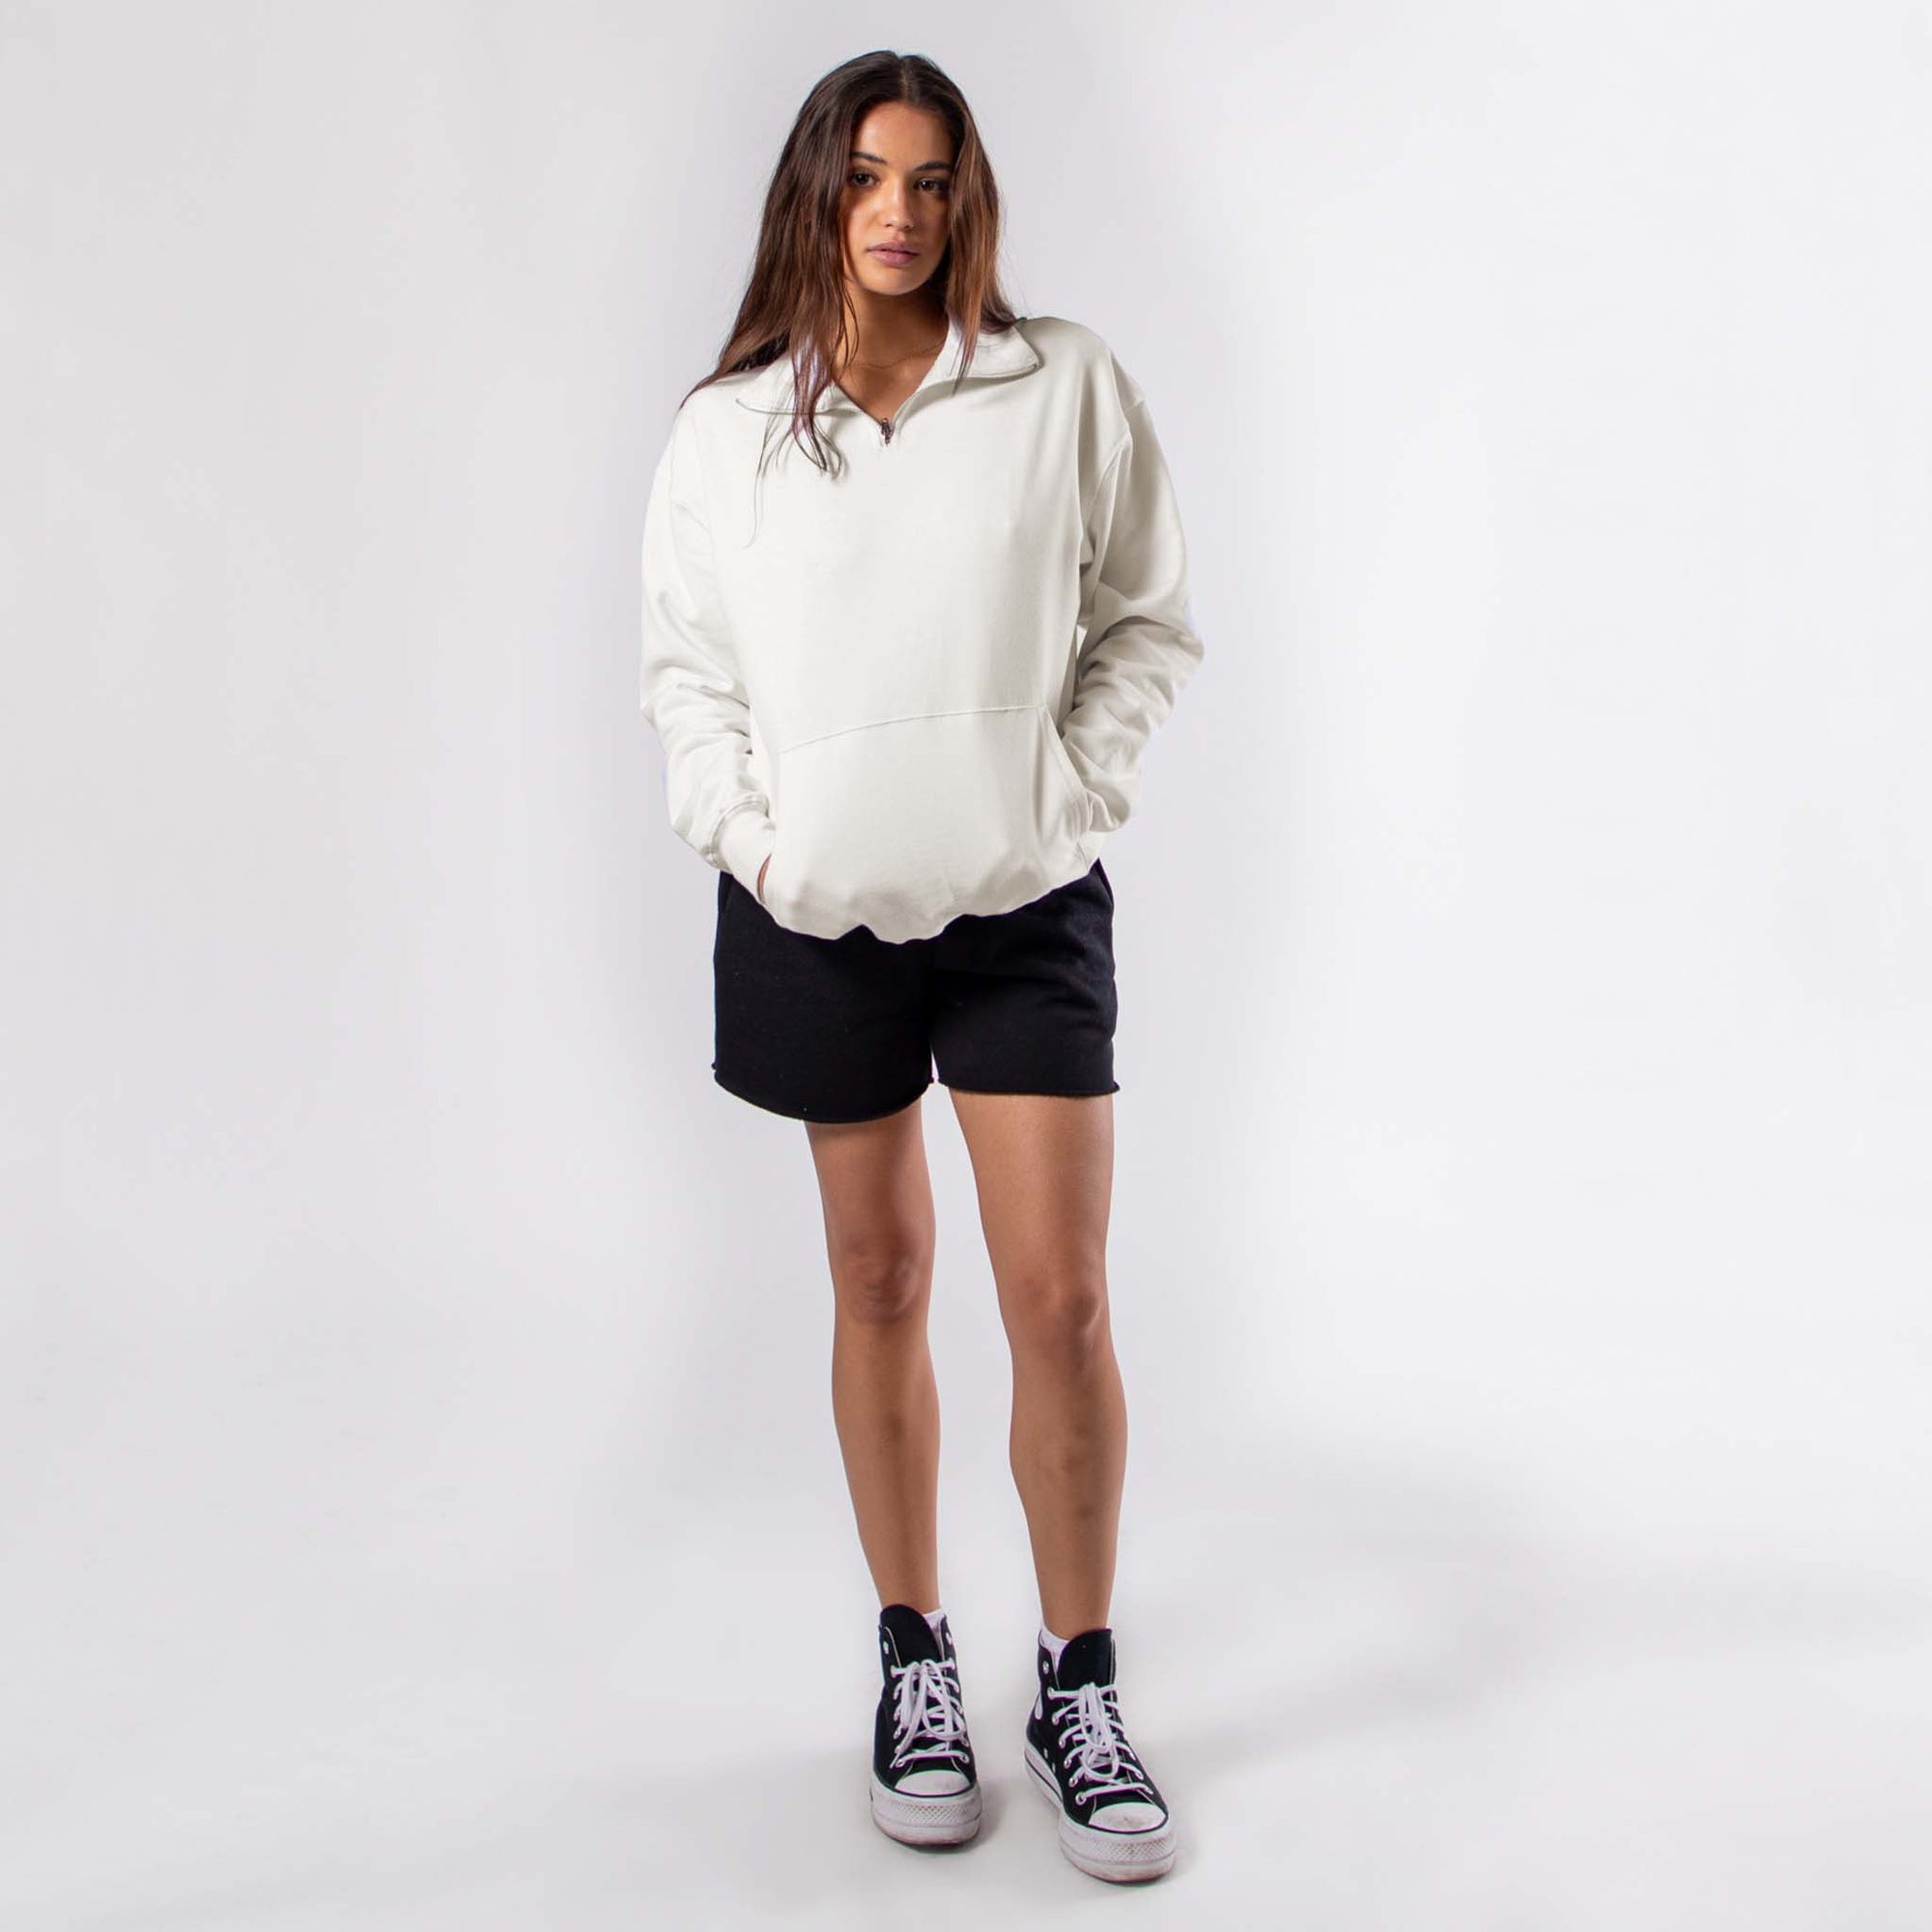 6051 - Women's Quarter Zip Sweatshirt